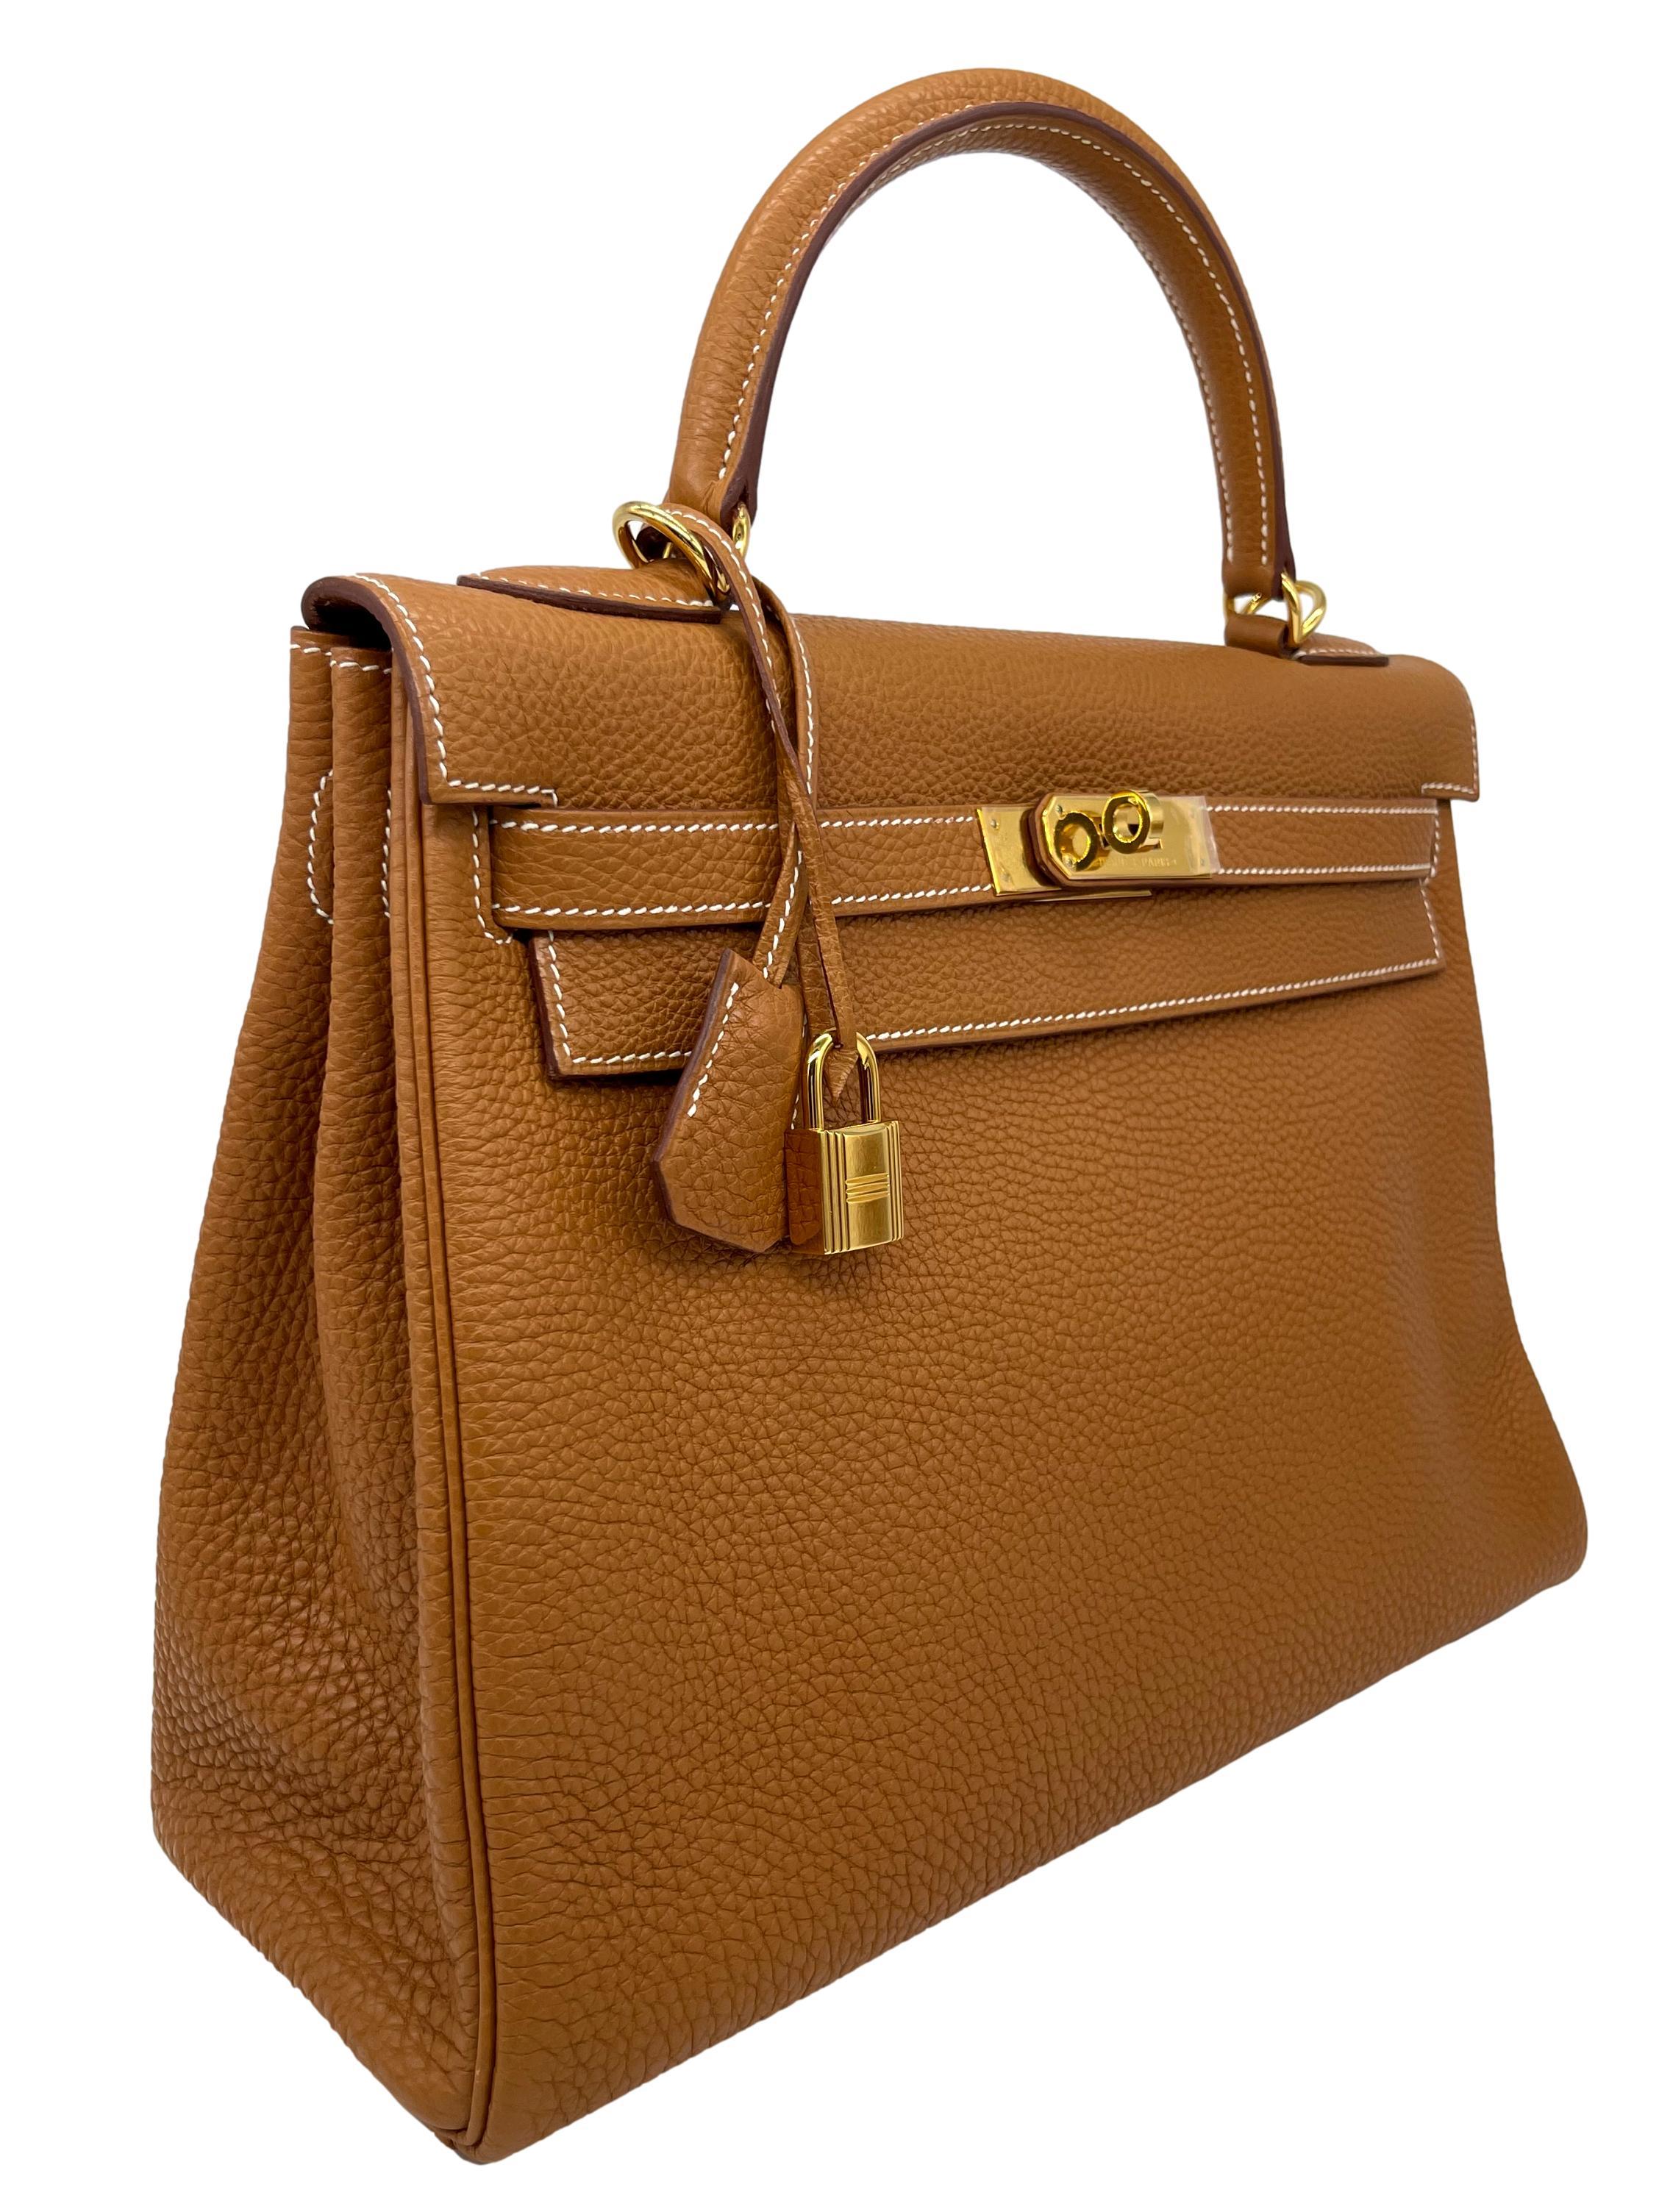 Women's or Men's Hermès Natural Clemence Retourne Kelly Handbag with Gold Hardware 32cm, 2007.